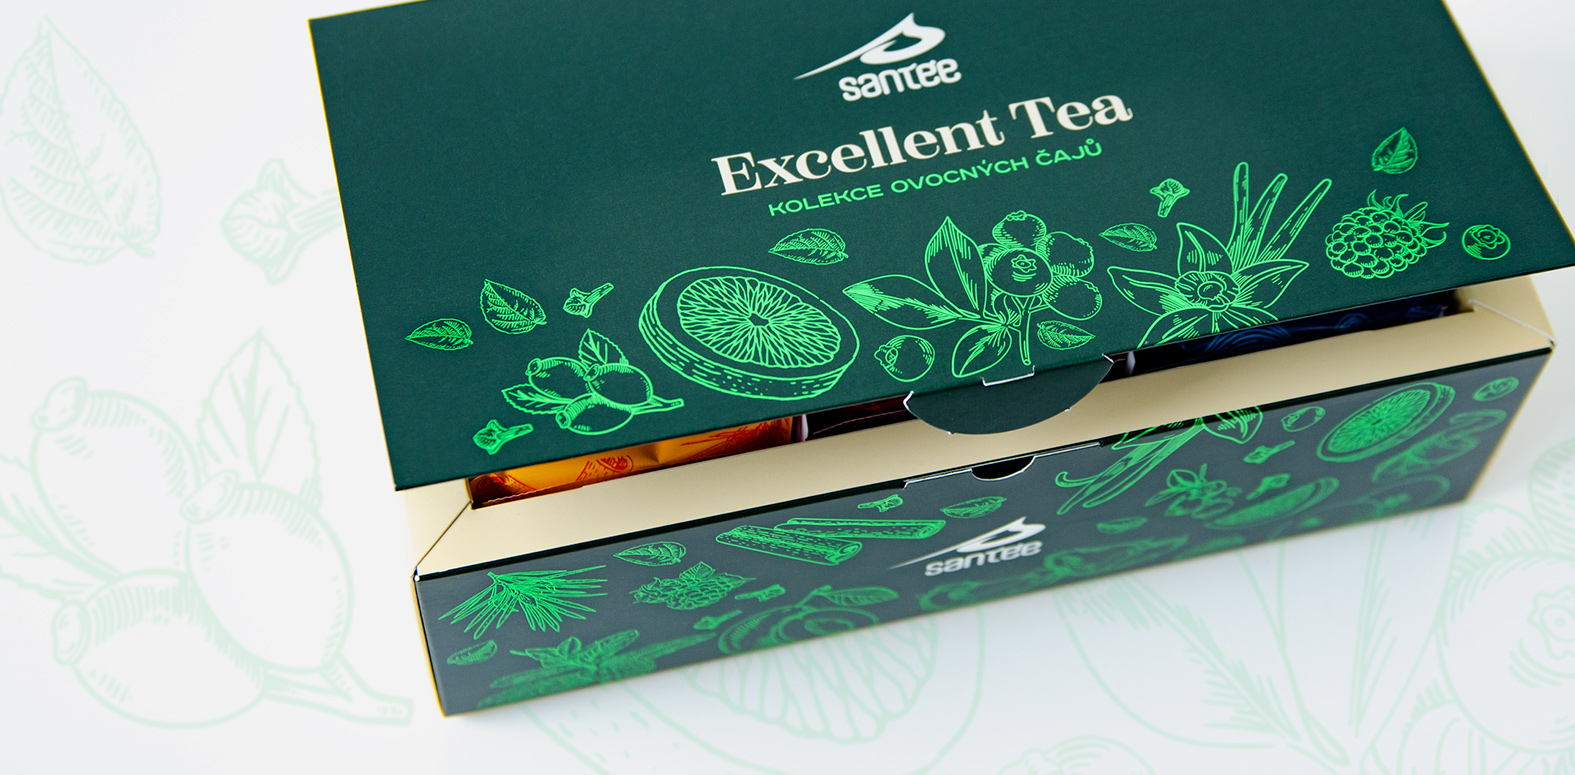 Obalový design krabičy s ovocným čajem.